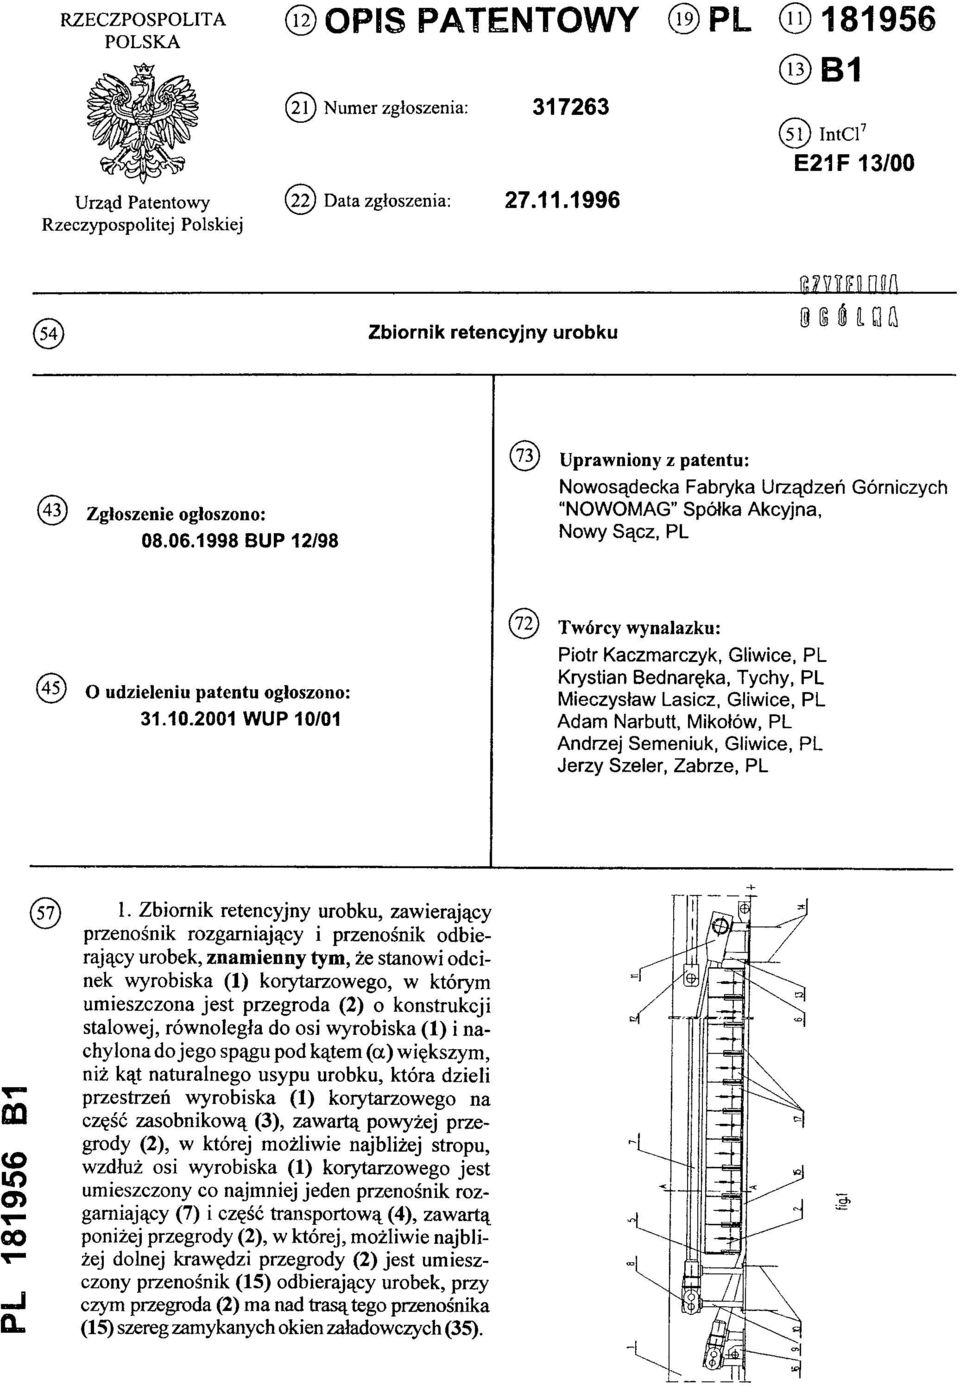 1998 BUP 12/98 (73) Uprawniony z patentu: Nowosądecka Fabryka Urządzeń Górniczych "NOWOMAG Spółka Akcyjna, Nowy Sącz, PL (45) O udzieleniu patentu ogłoszono: 31.10.